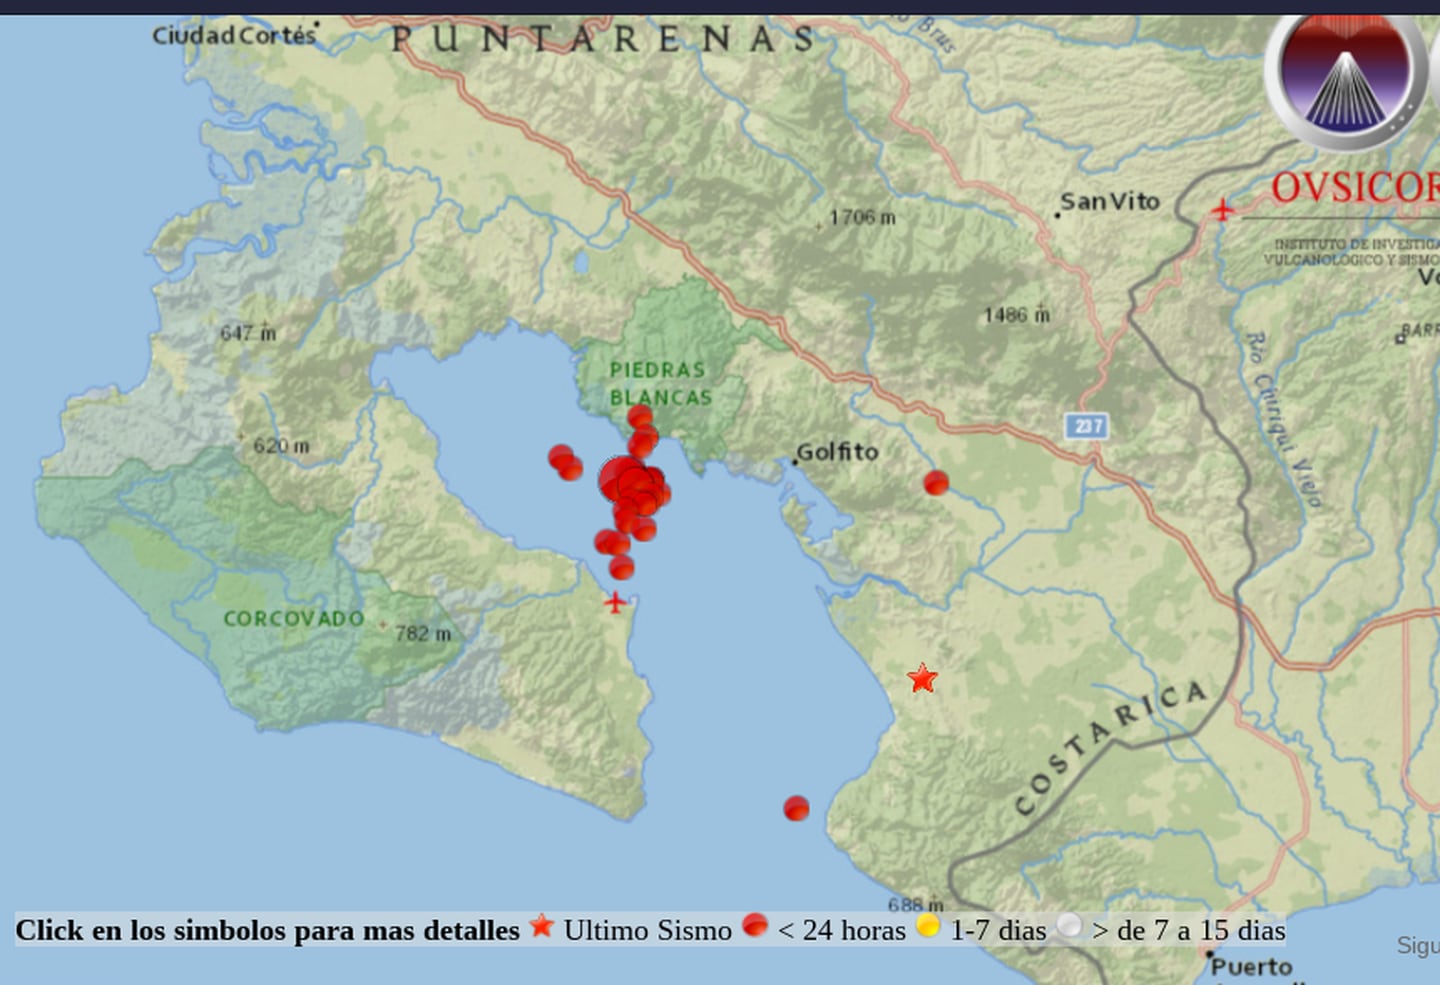 Más de 40 sismos, el más fuerte de magnitud 4,9 se han originado en el Golfo Dulce y alrededores, Golfito. Imagen: Ovsicori.